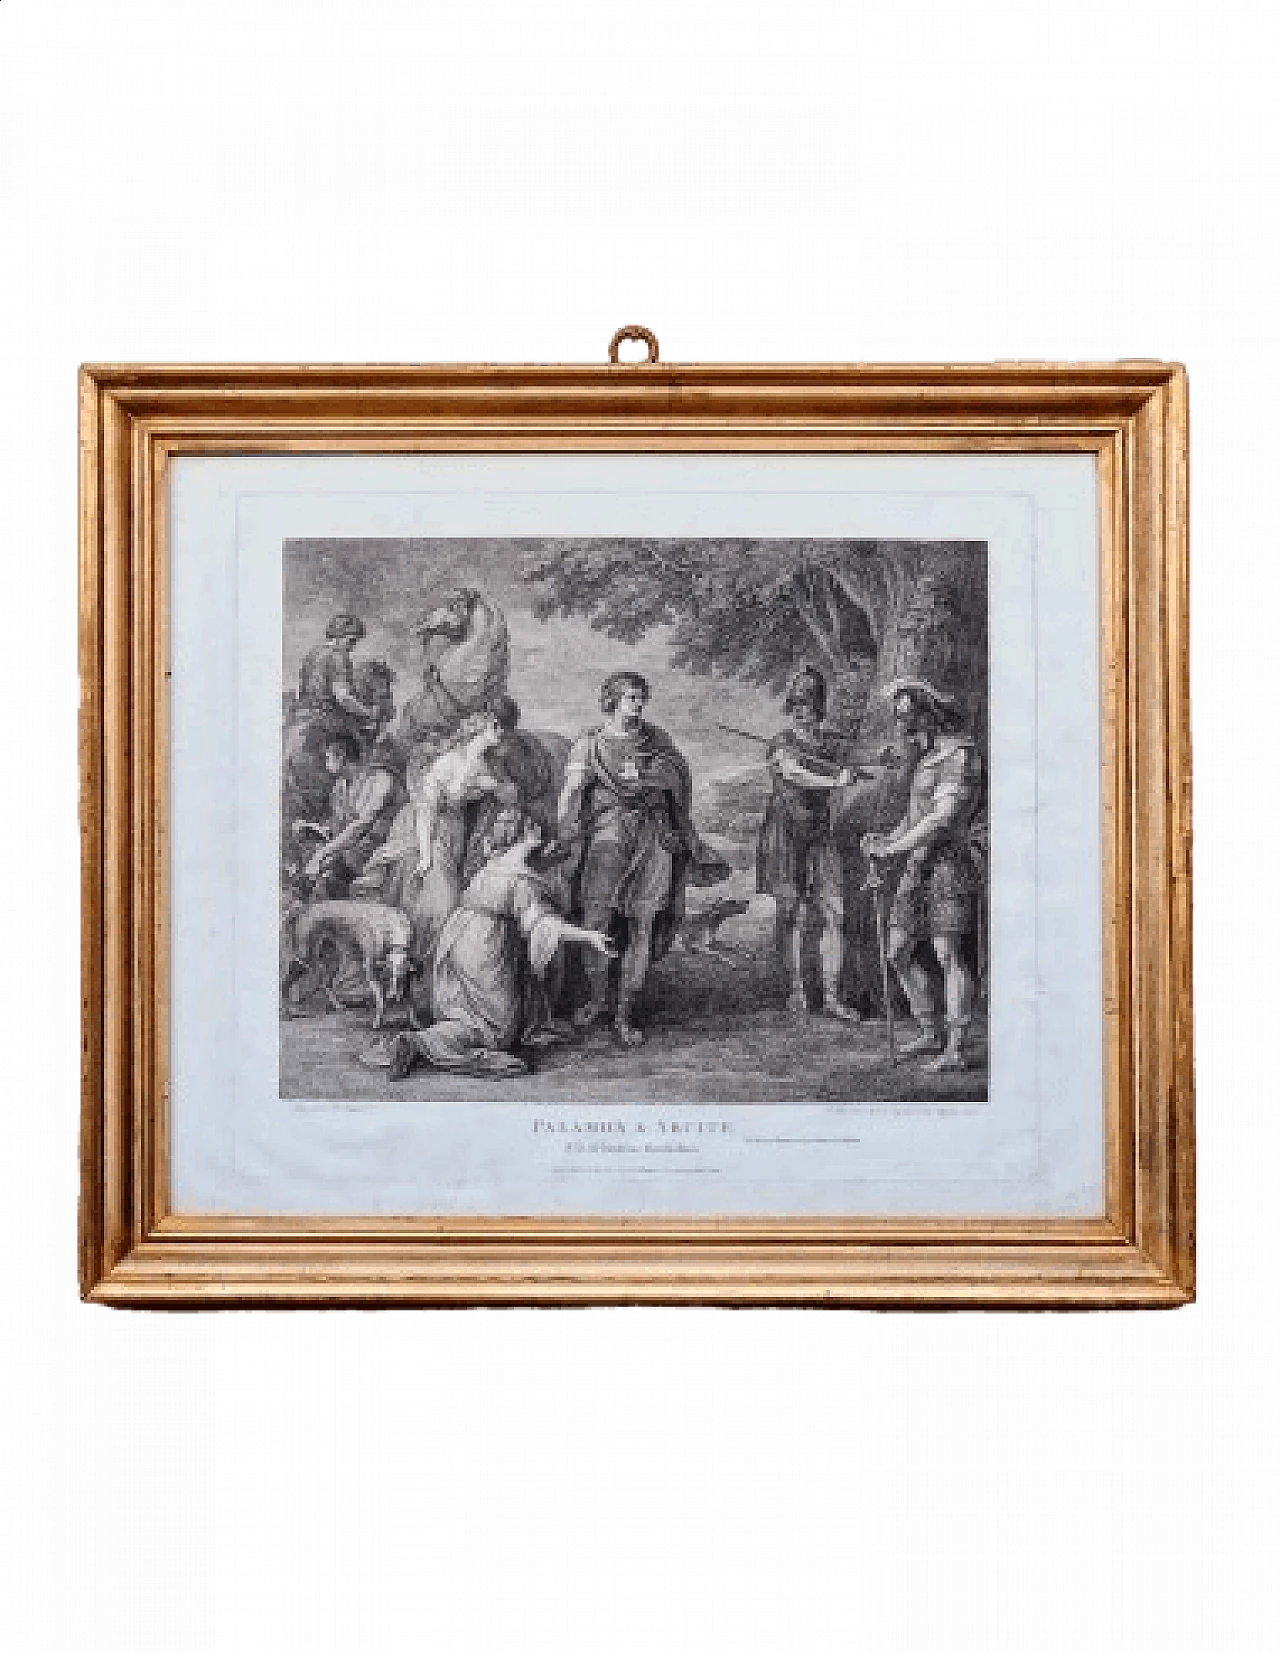 Palamone and Arcite, engraving by Francesco Bartolozzi, '700 11